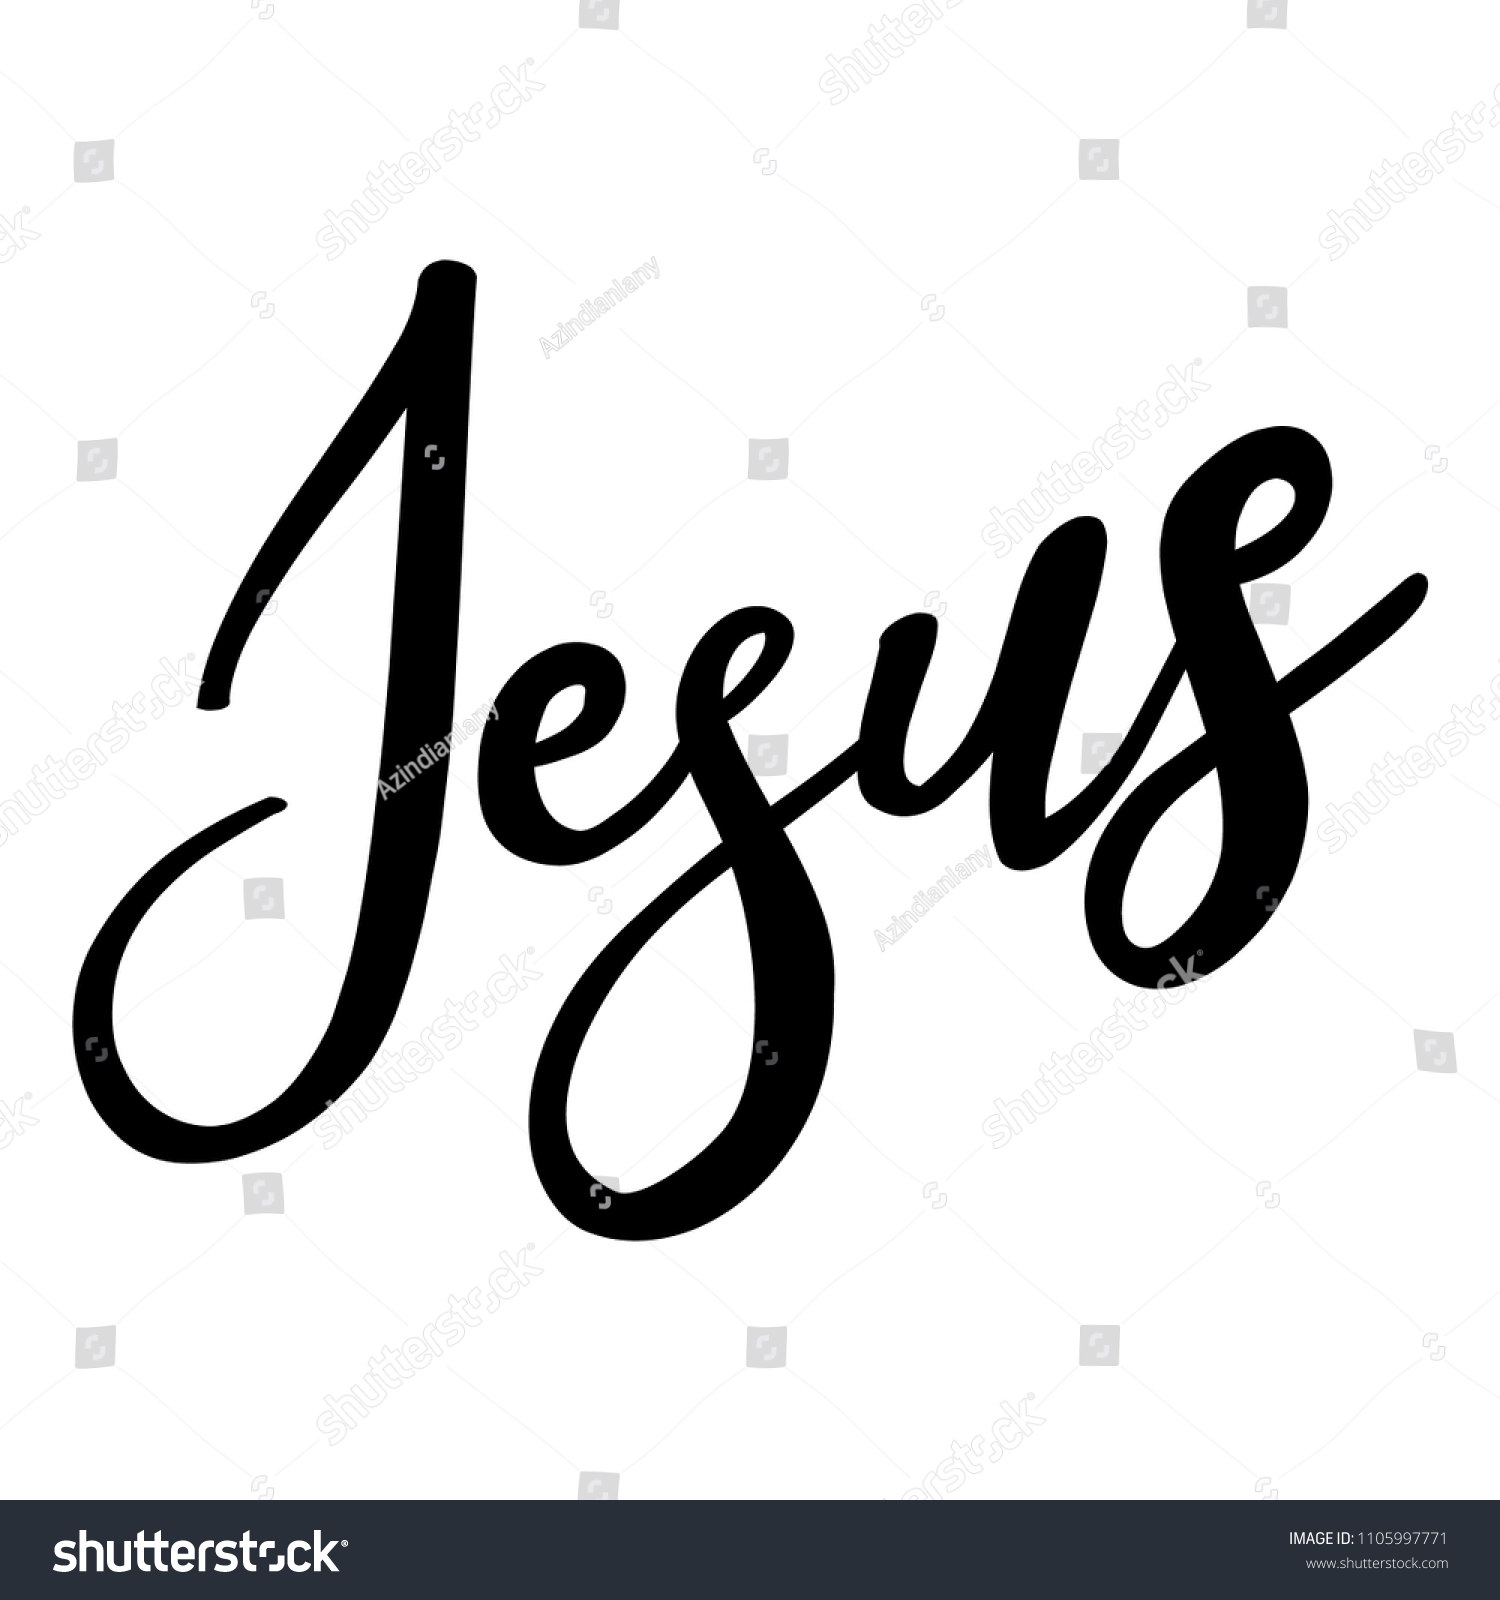 Jesus text Images, Stock Photos & Vectors | Shutterstock